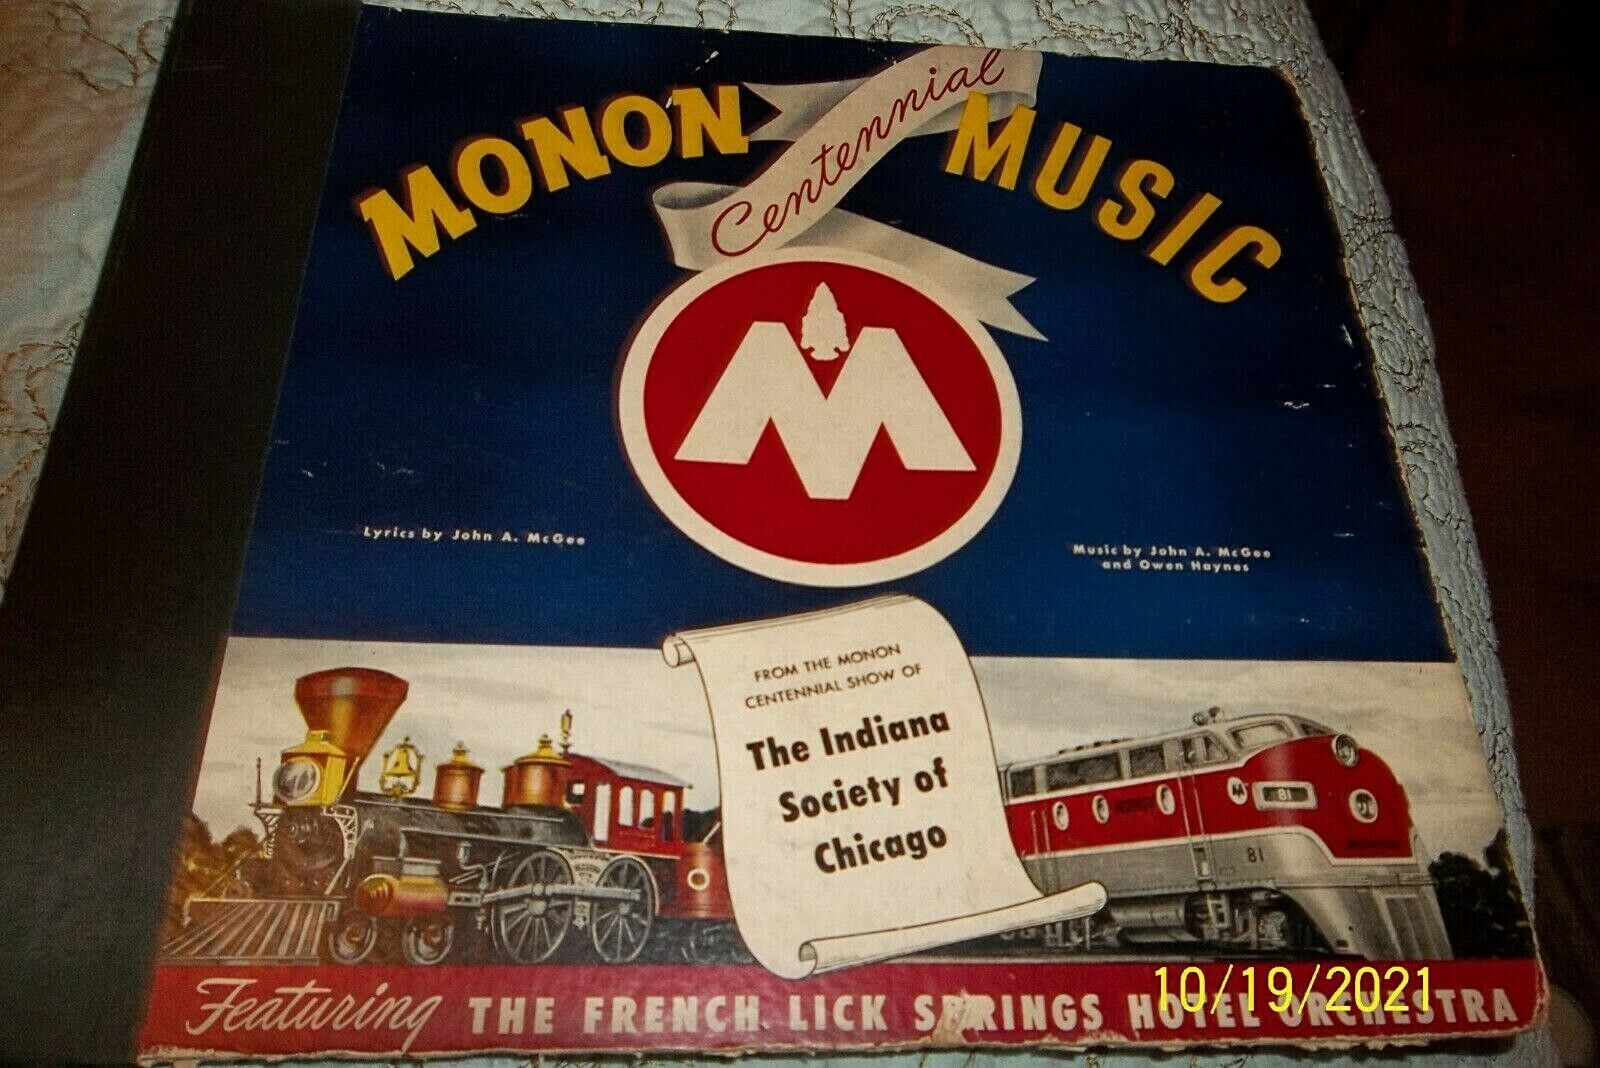 **MONON RAILROAD** 1947 CENTENNIAL CELEBRATION RECORD ALBUM 78 RPM 4 RECORD SET